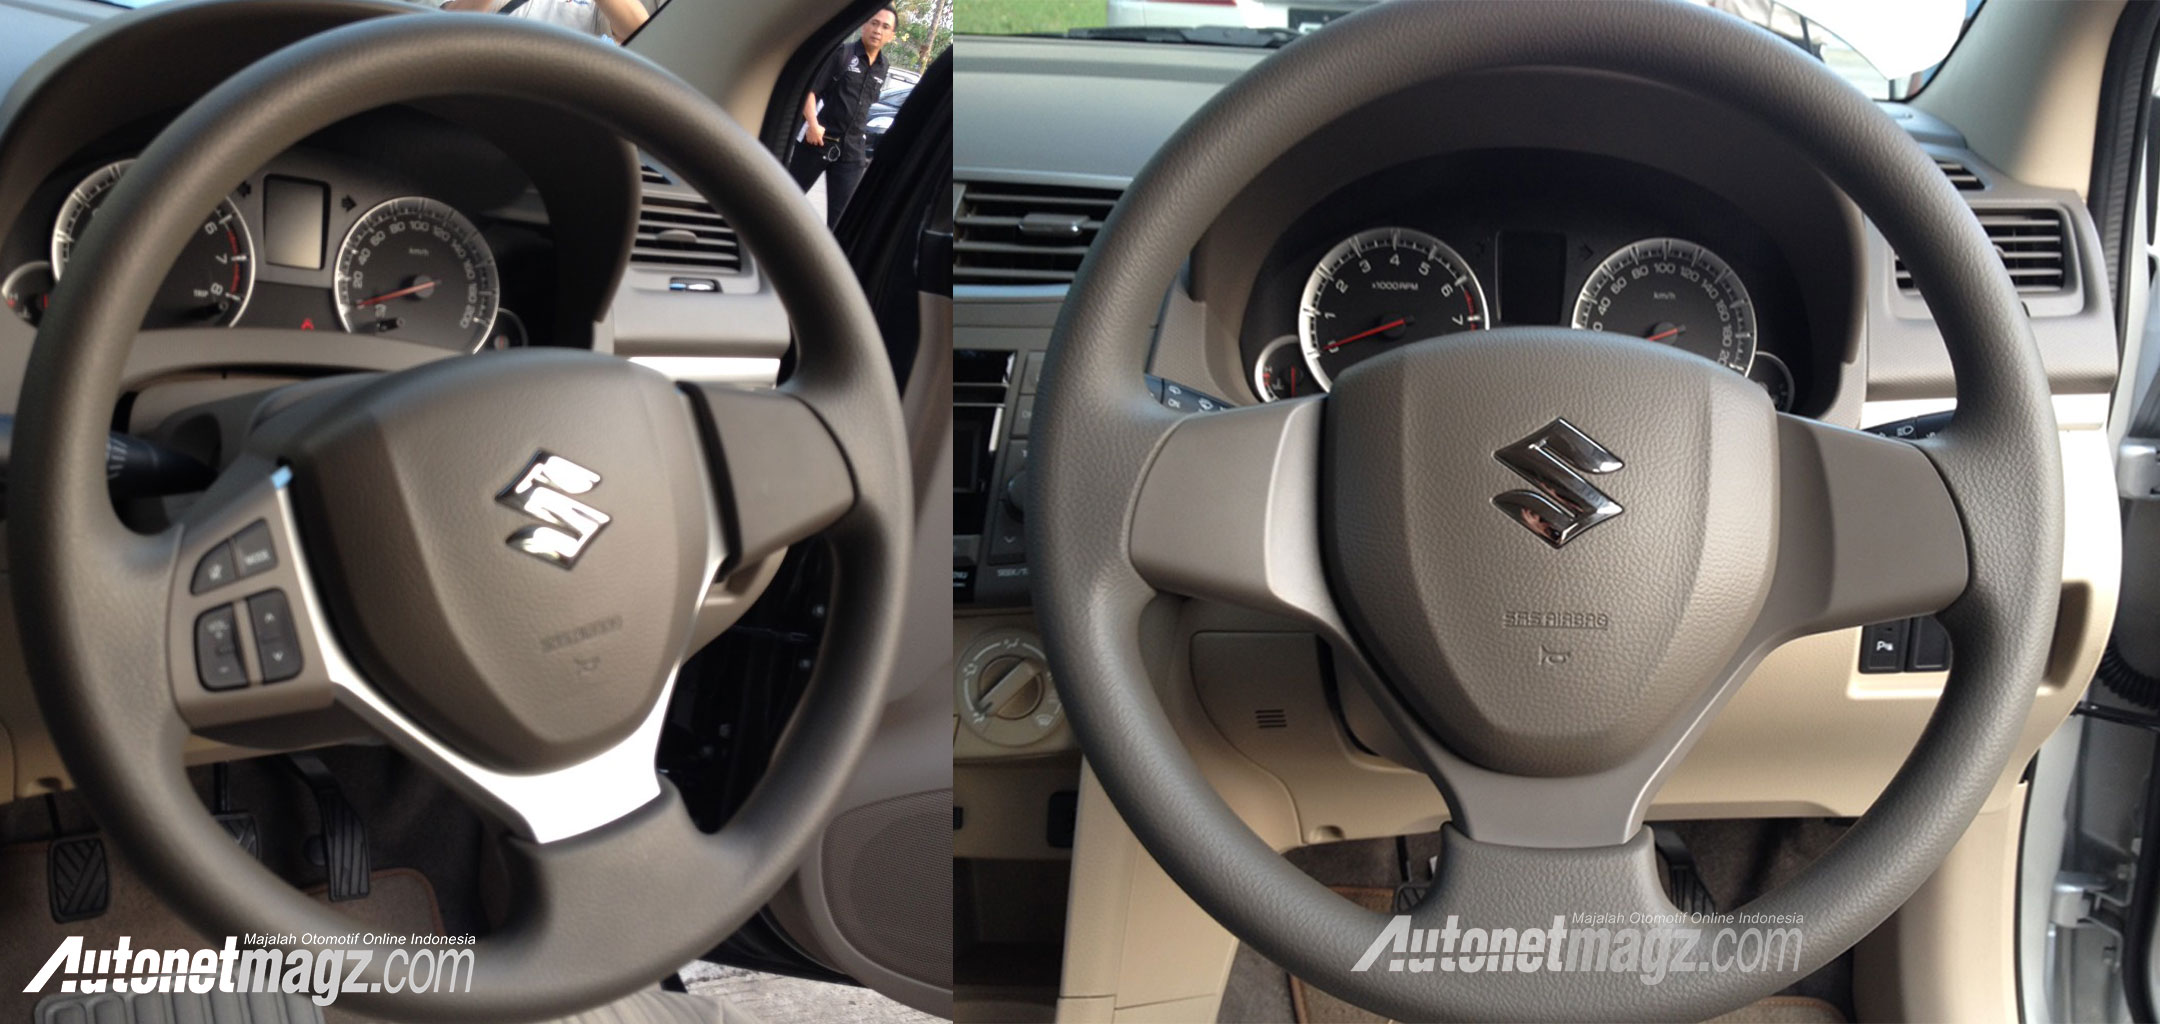 Berita, Setir-New-Suzuki-Ertiga-Facelift-2015: First Impression Review Suzuki Ertiga Facelift 2015